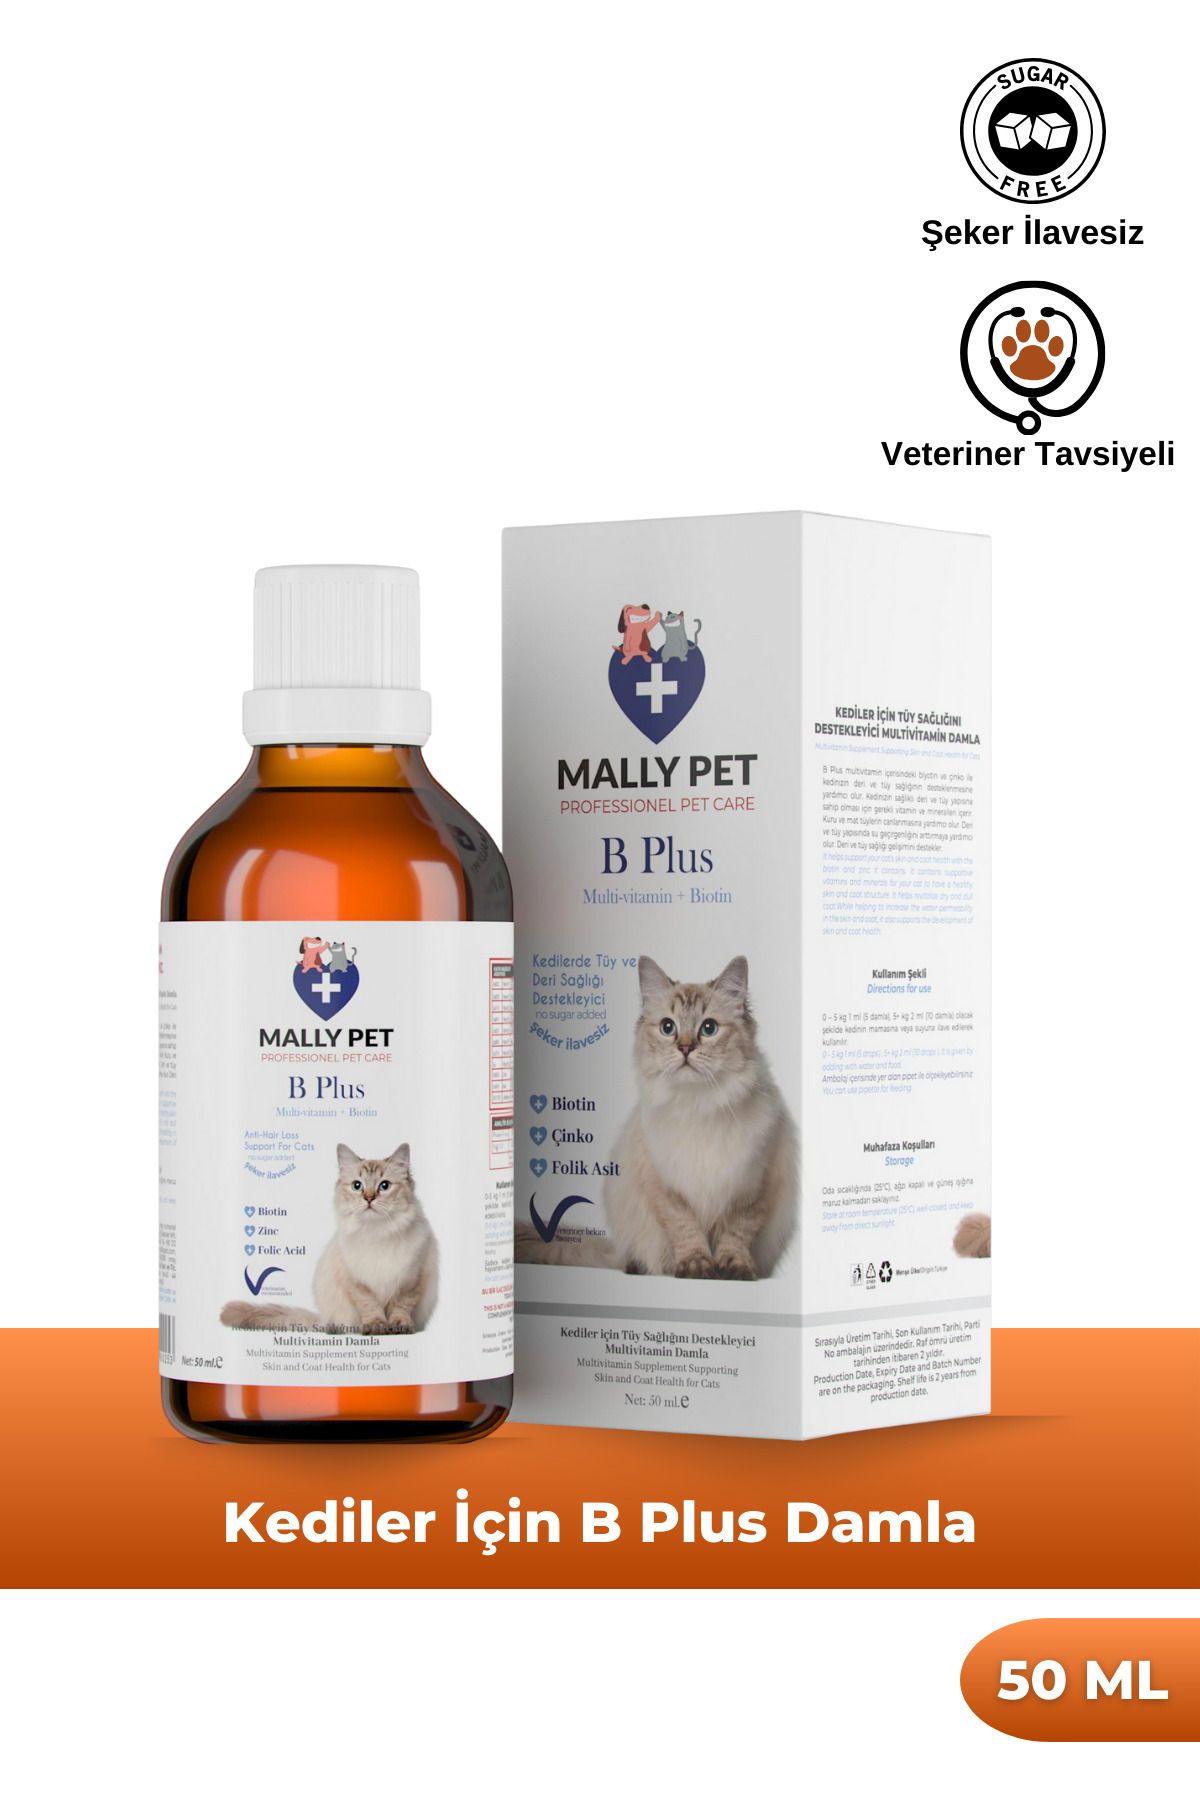 MALLY PET PROFESSIONEL PET CARE Kediler Için Tüy Dökülmesi Engelleyici Tüy Sağlığı Damlası Plus B For Cats 50 ml